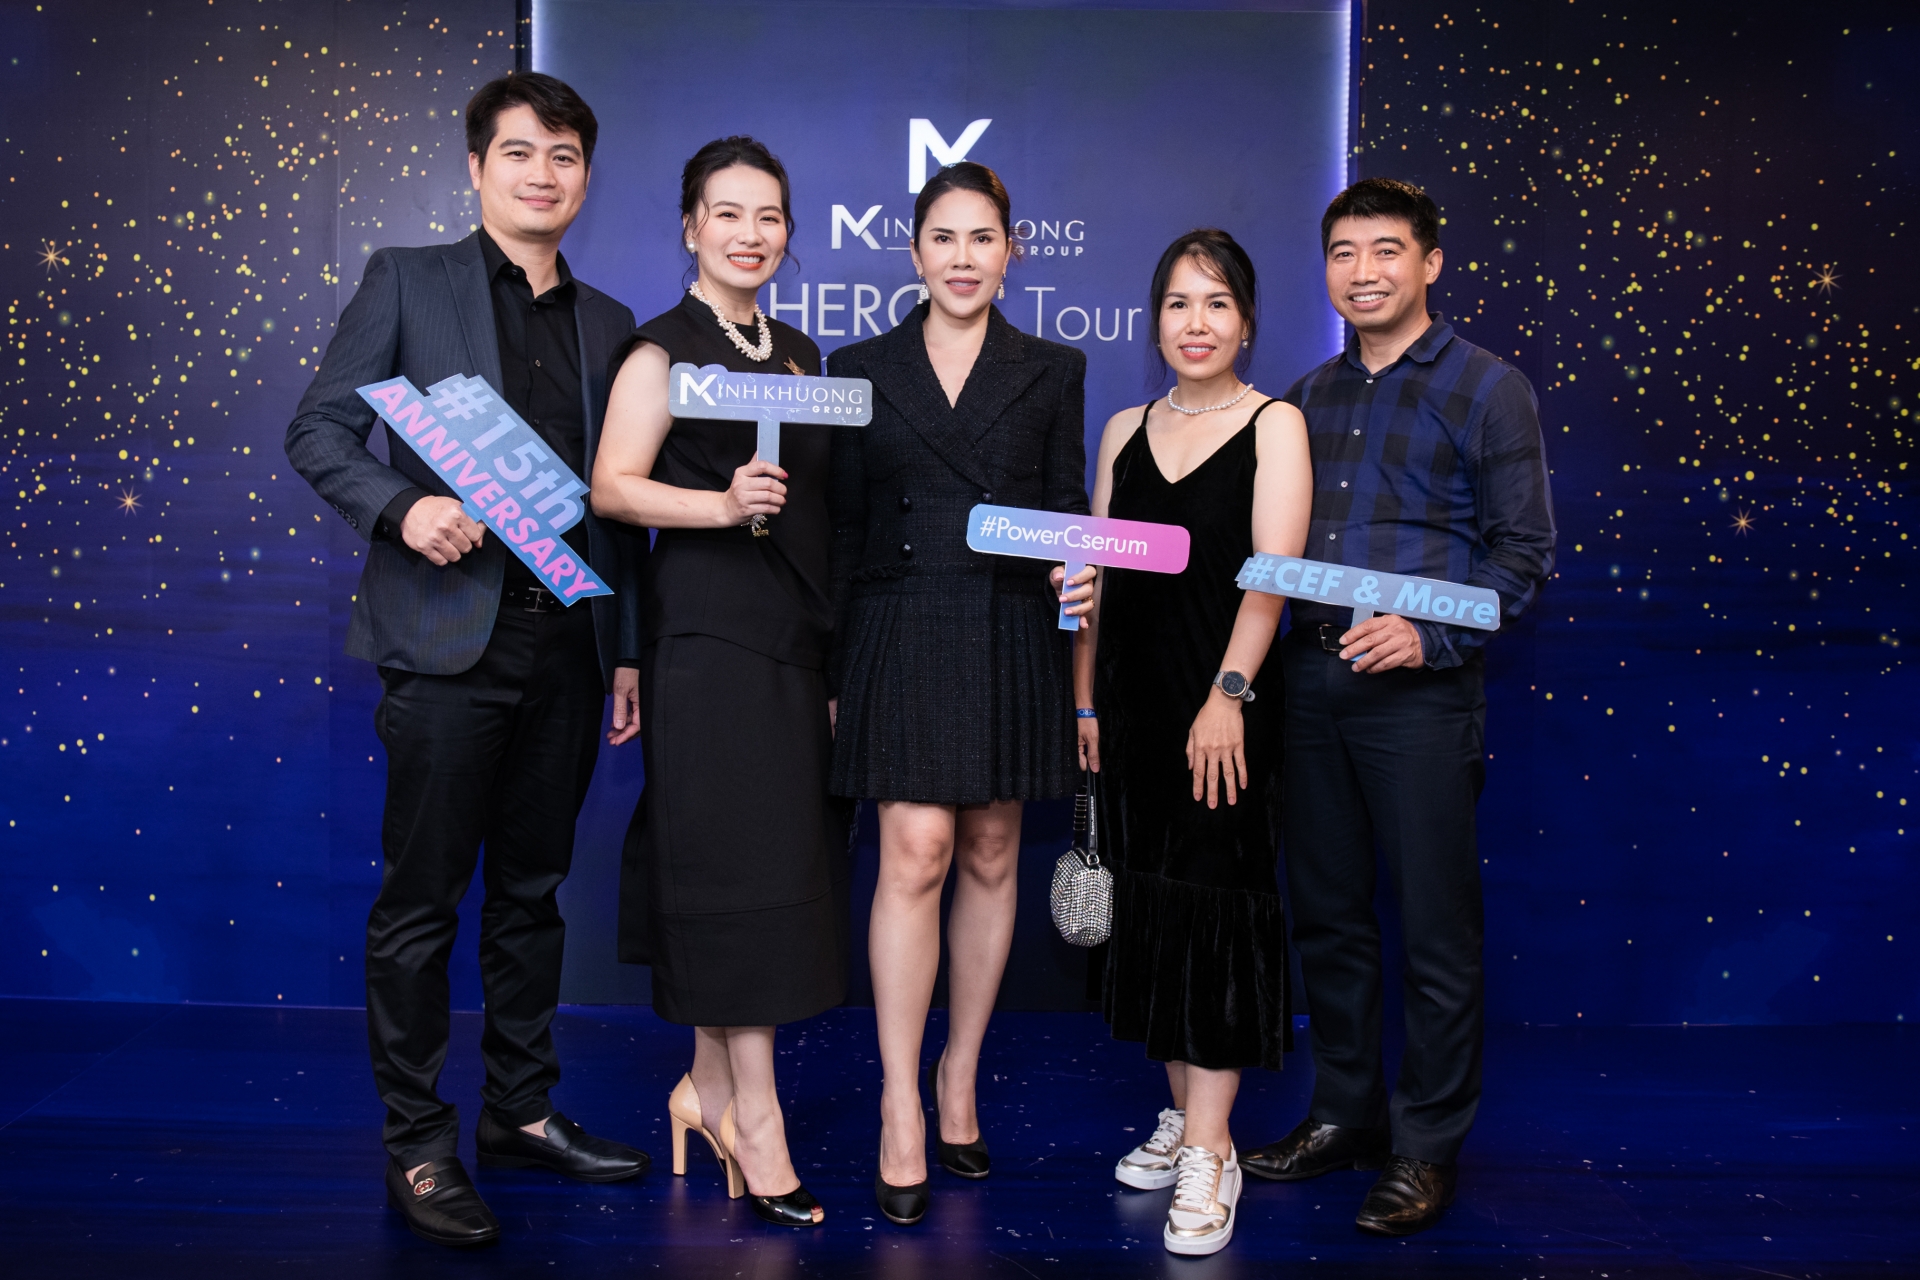 Minh Khương Group tri ân khách hàng nhân dịp kỷ niệm 15 năm thành lập